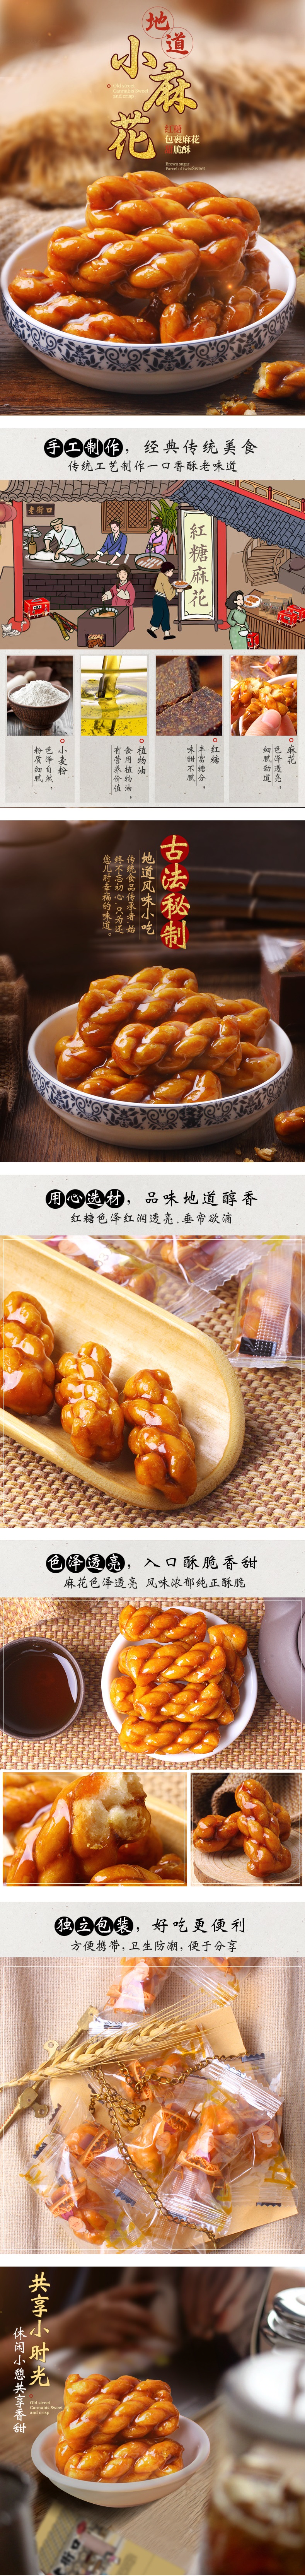 天津特产  老街口红糖麻花网红零食点心小辫蜜麻花香酥传统手工糕点500克